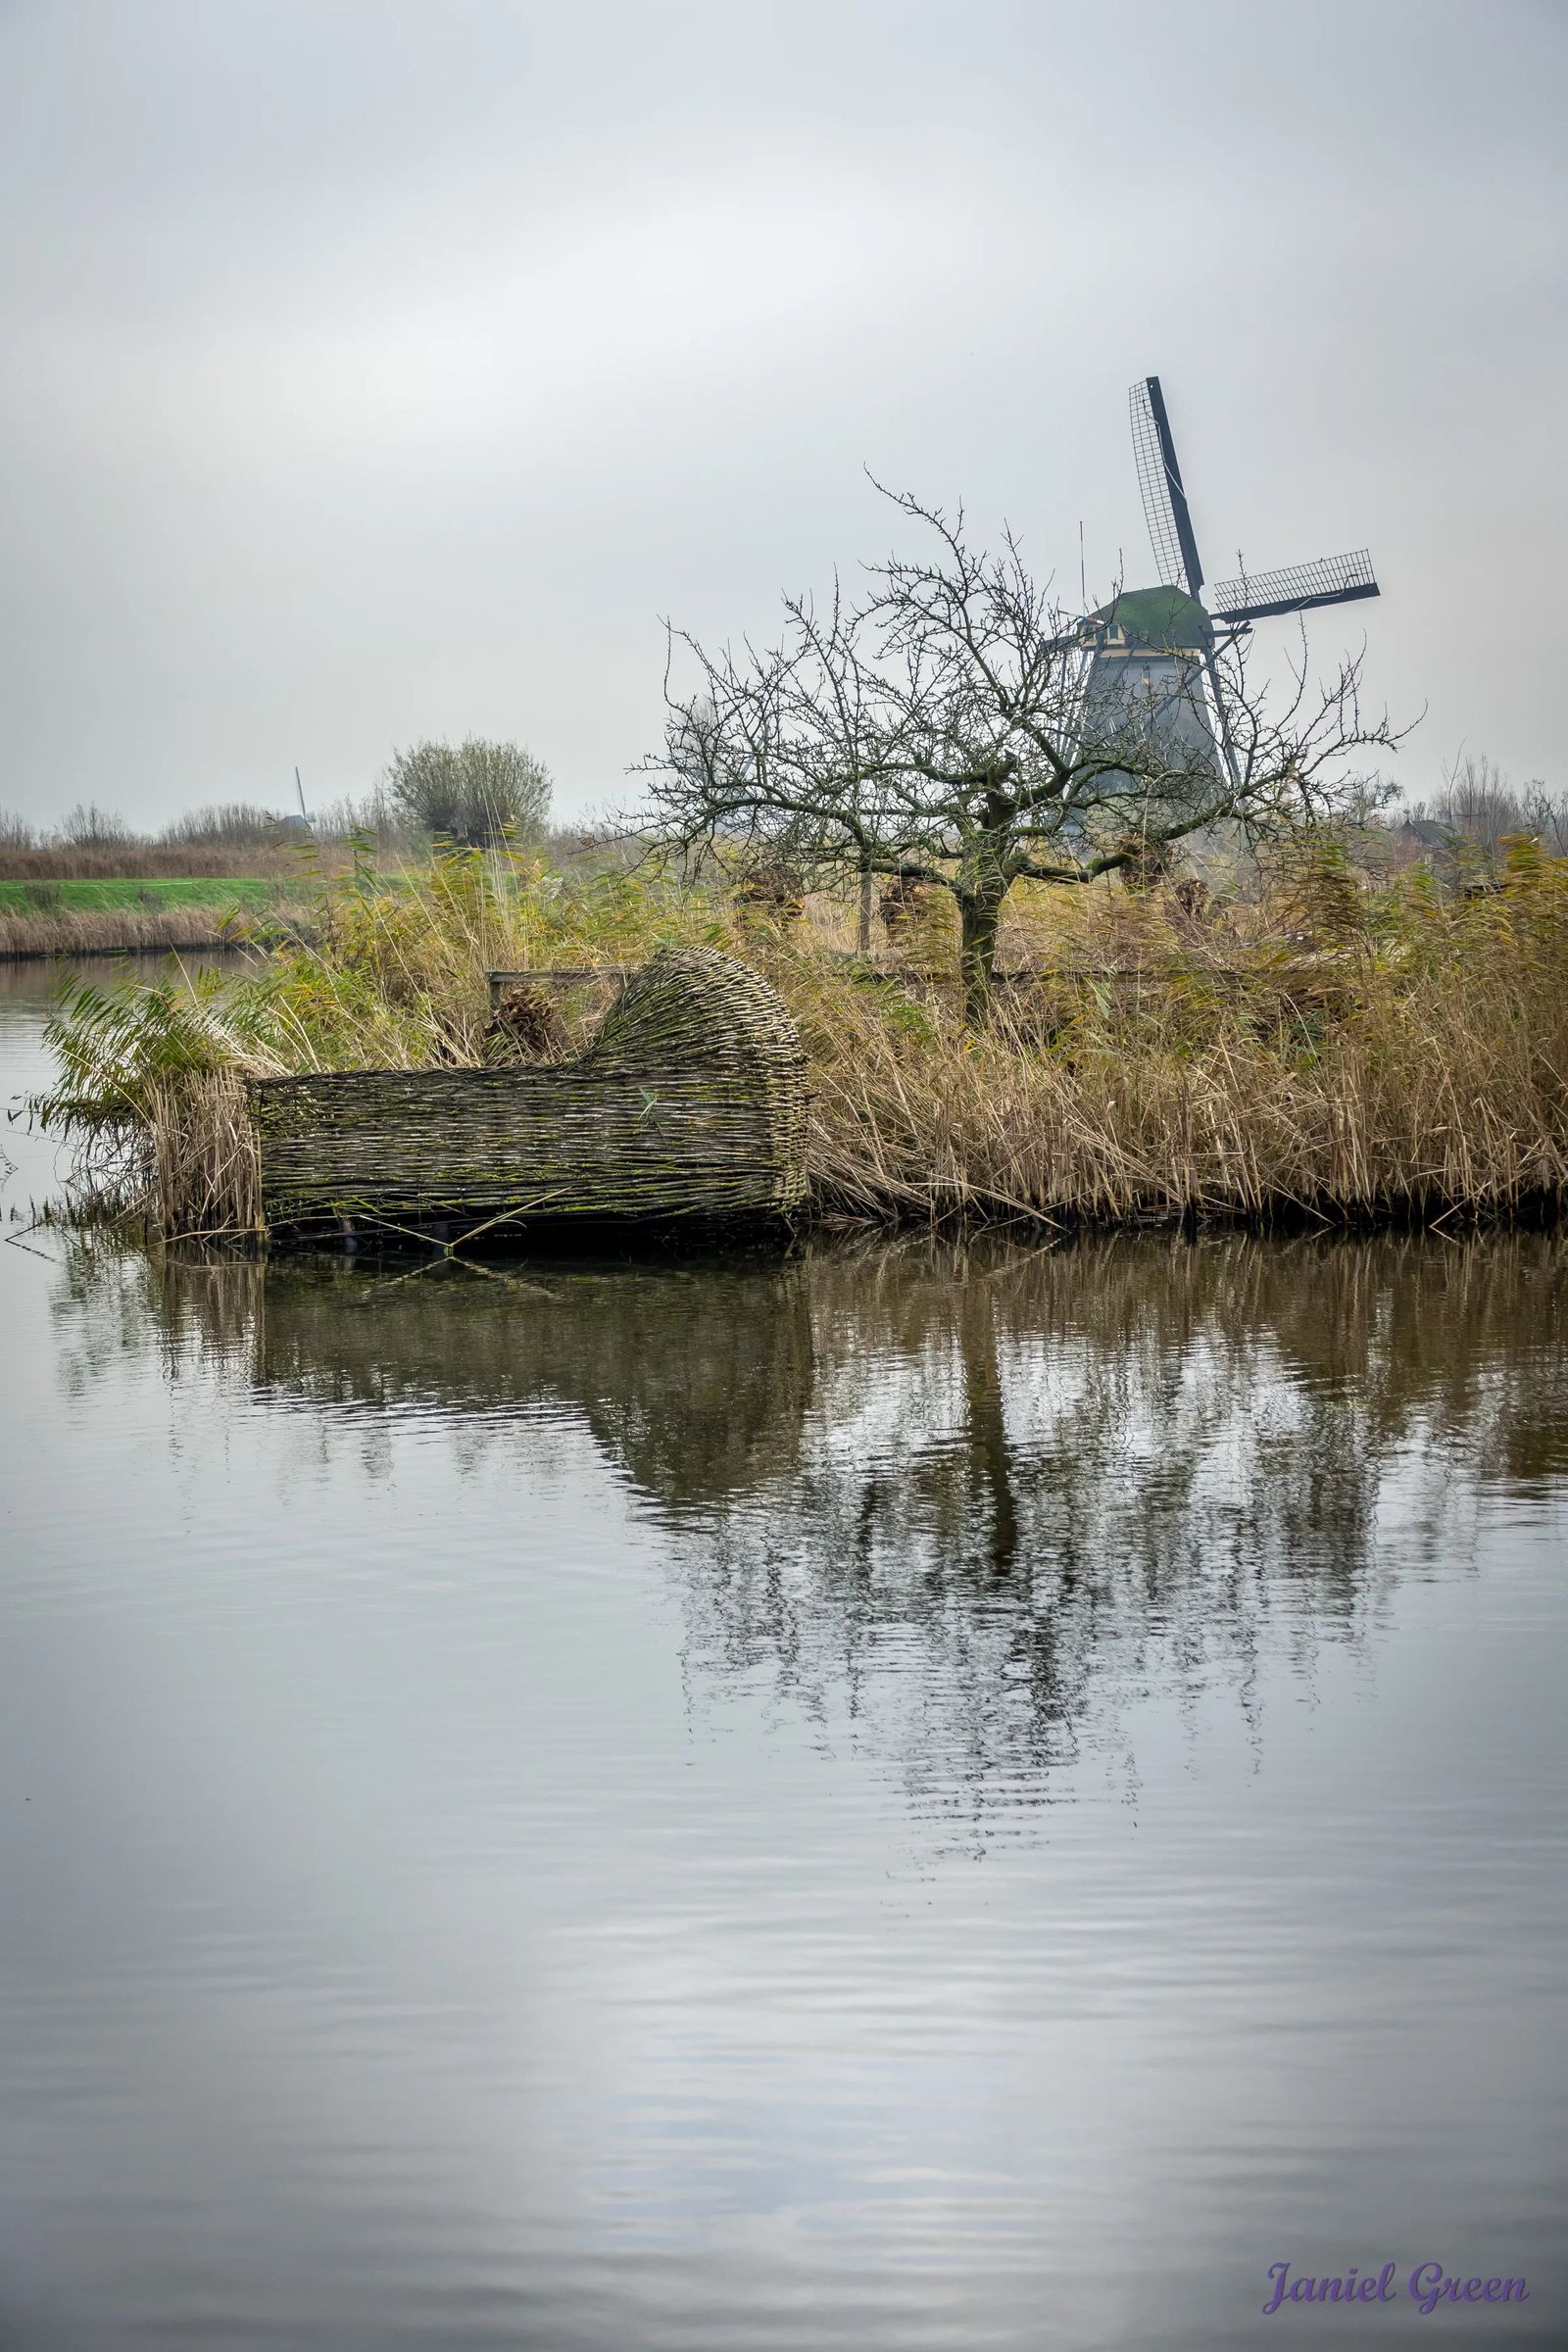 Kinderdijk Windmills,  a UNESCO World Heritage Site